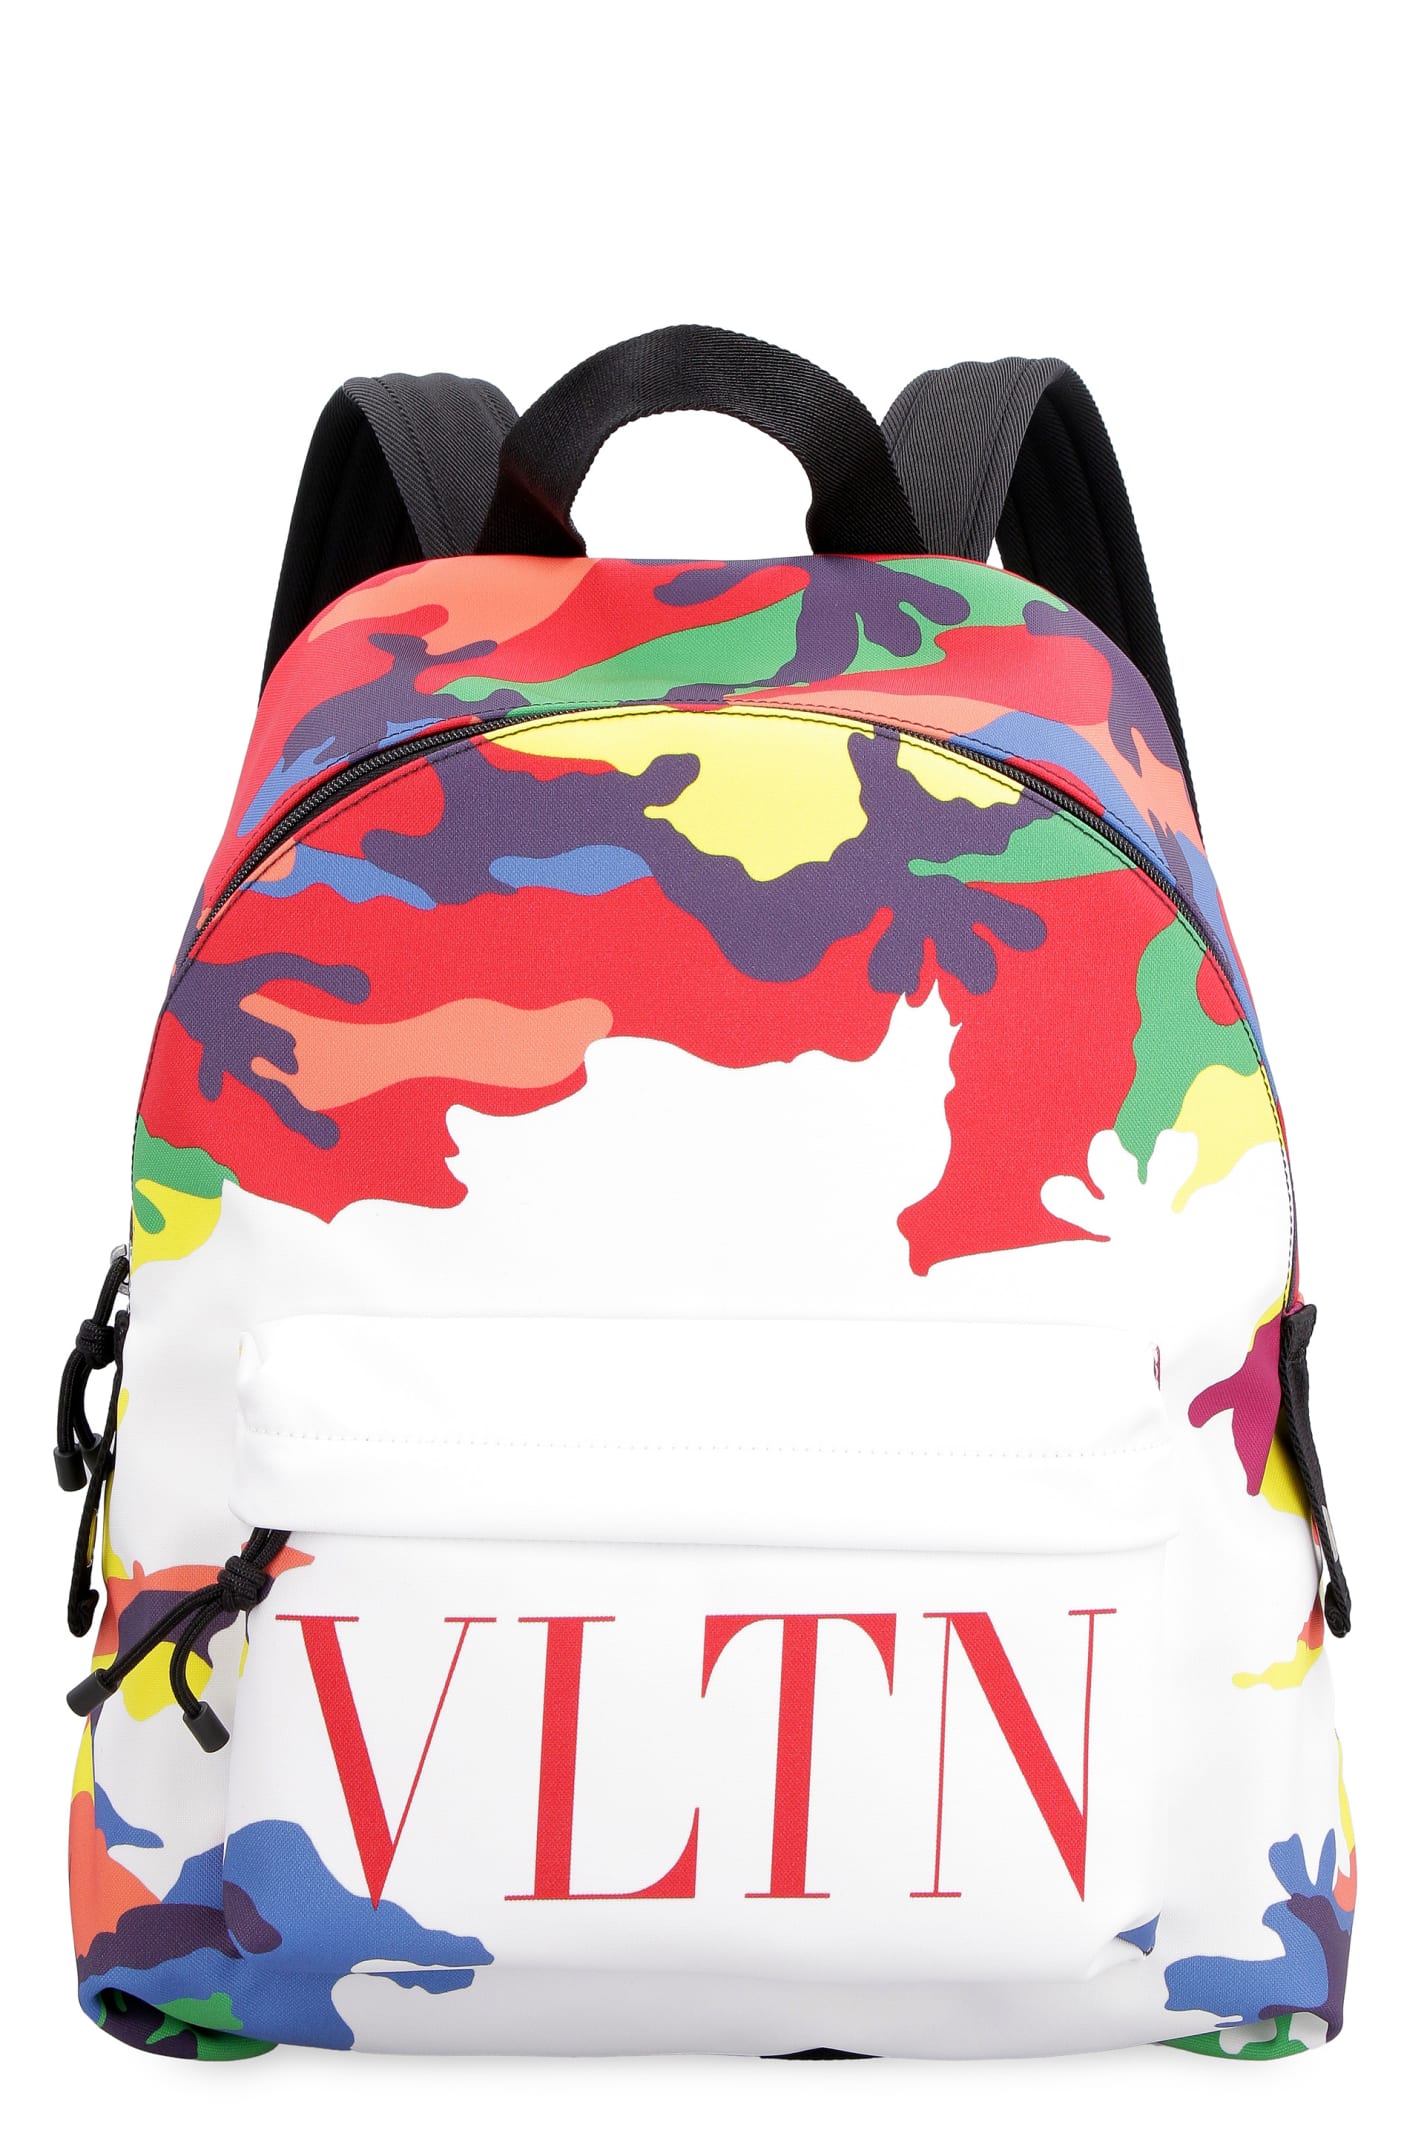 Valentino Fabric Backpack With Logo - Valentino Garavani